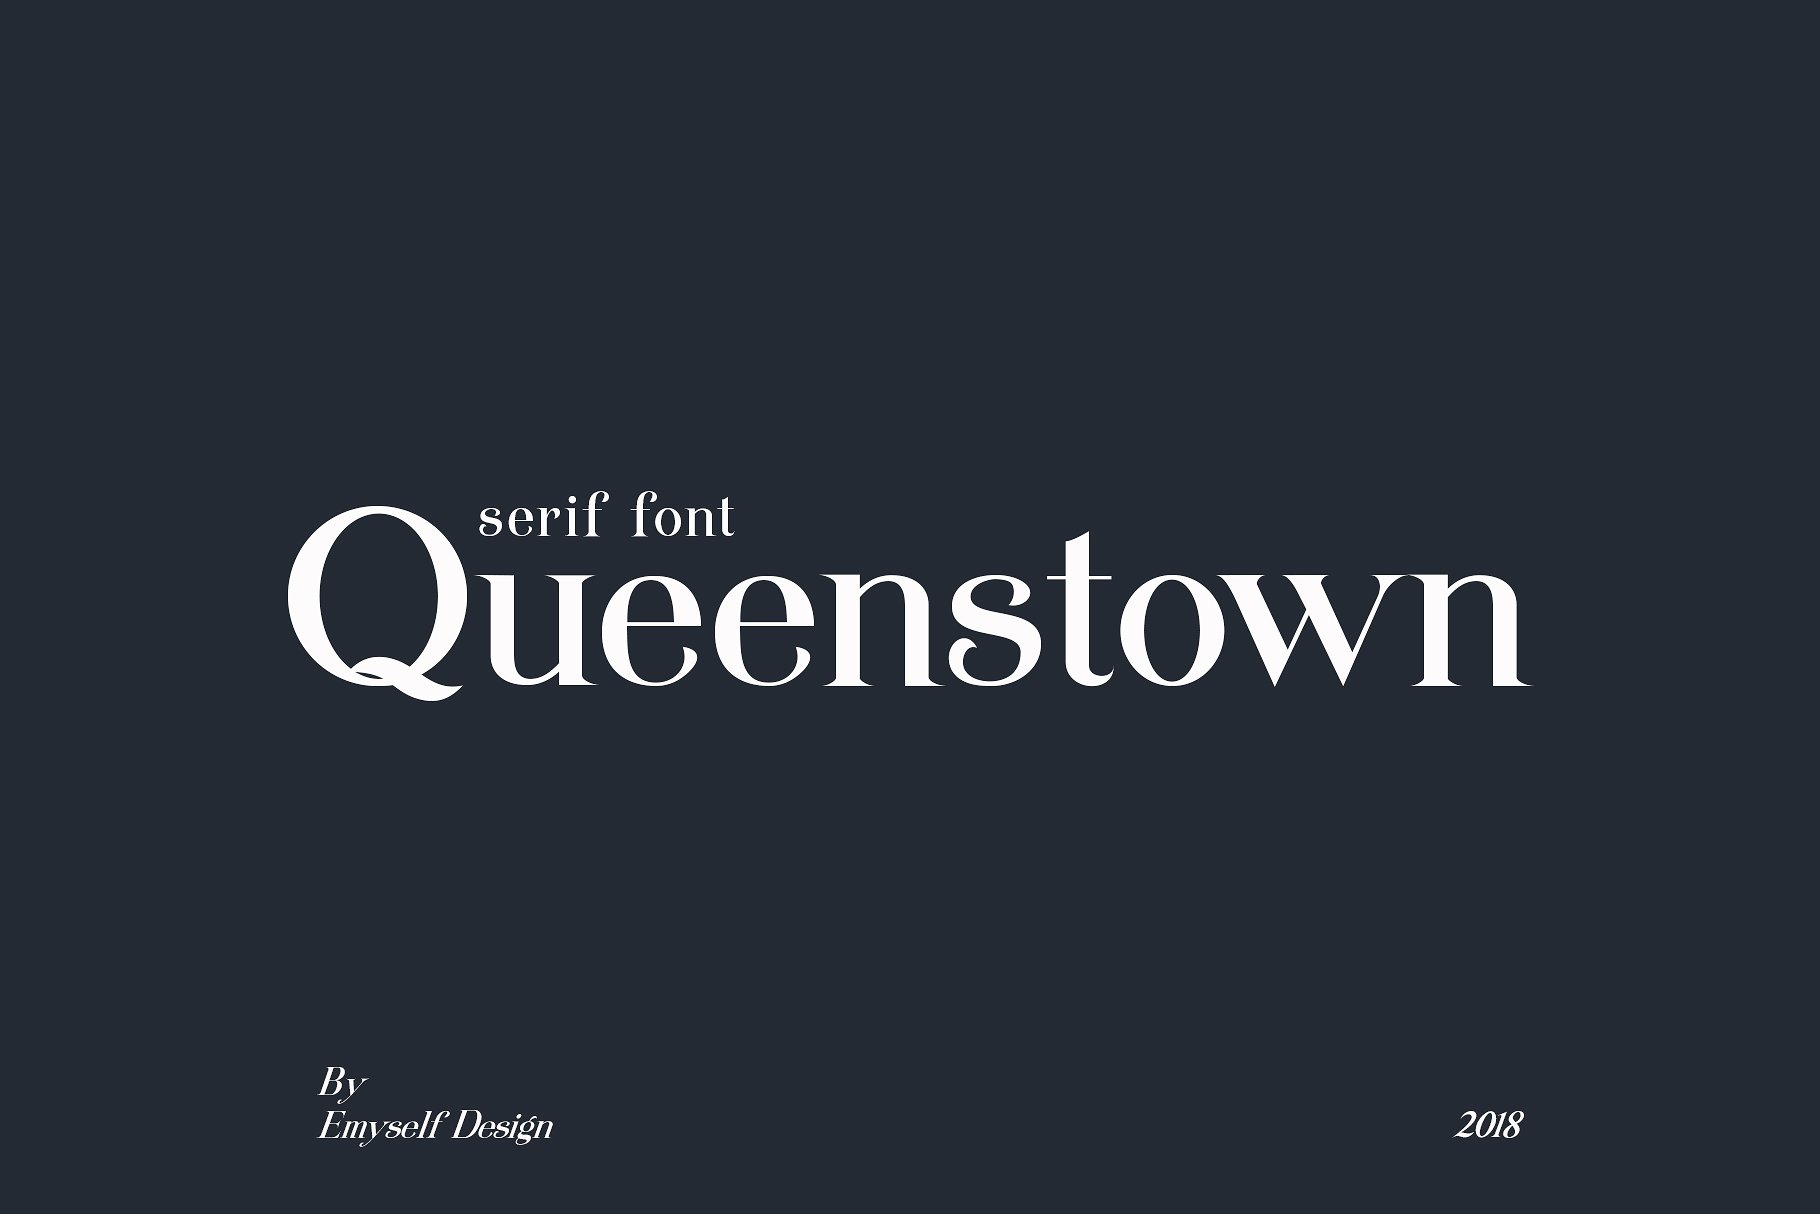 Queenstown a serif logo font